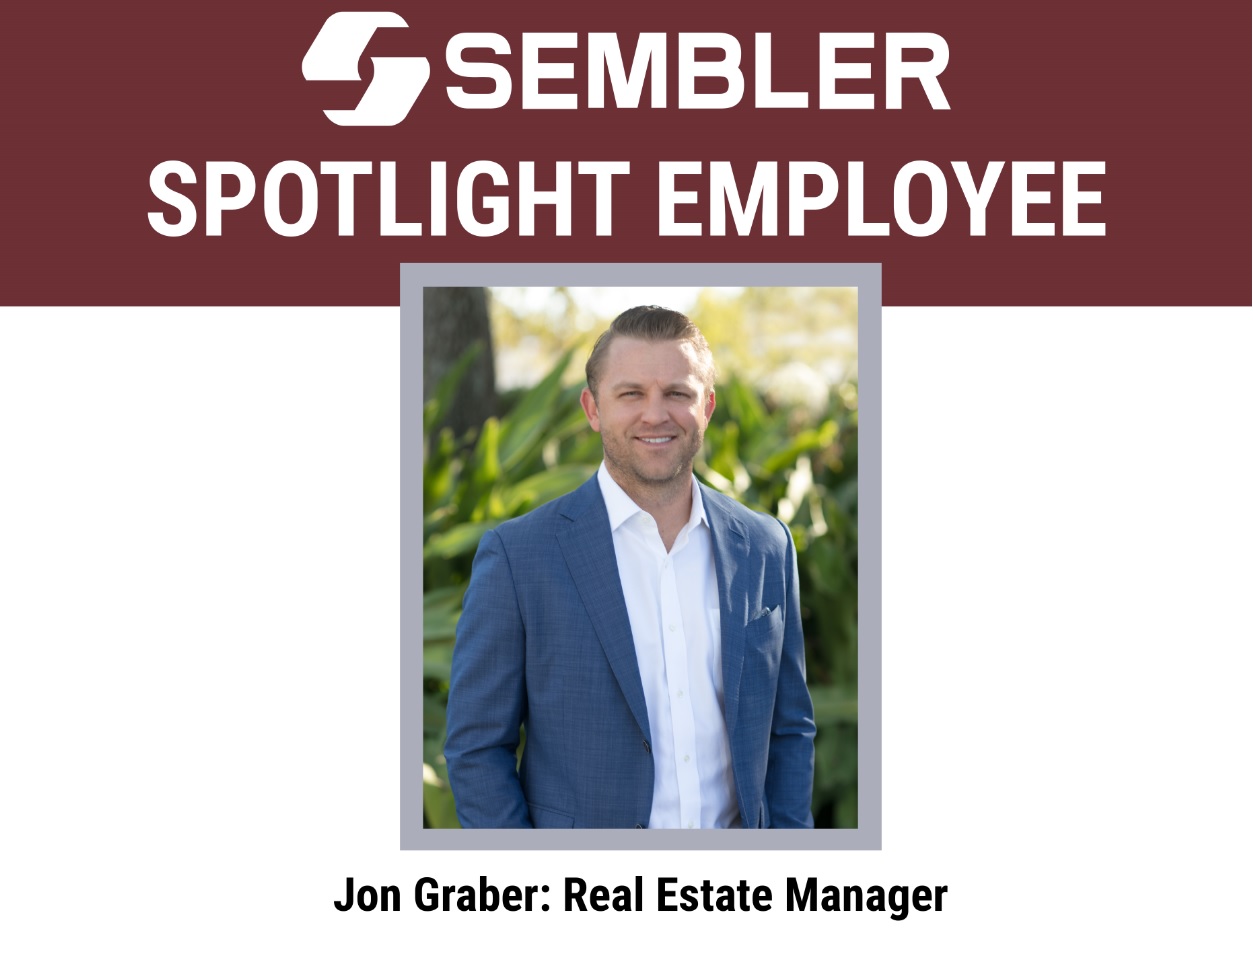 Sembler Spotlight Employee: Jon Graber